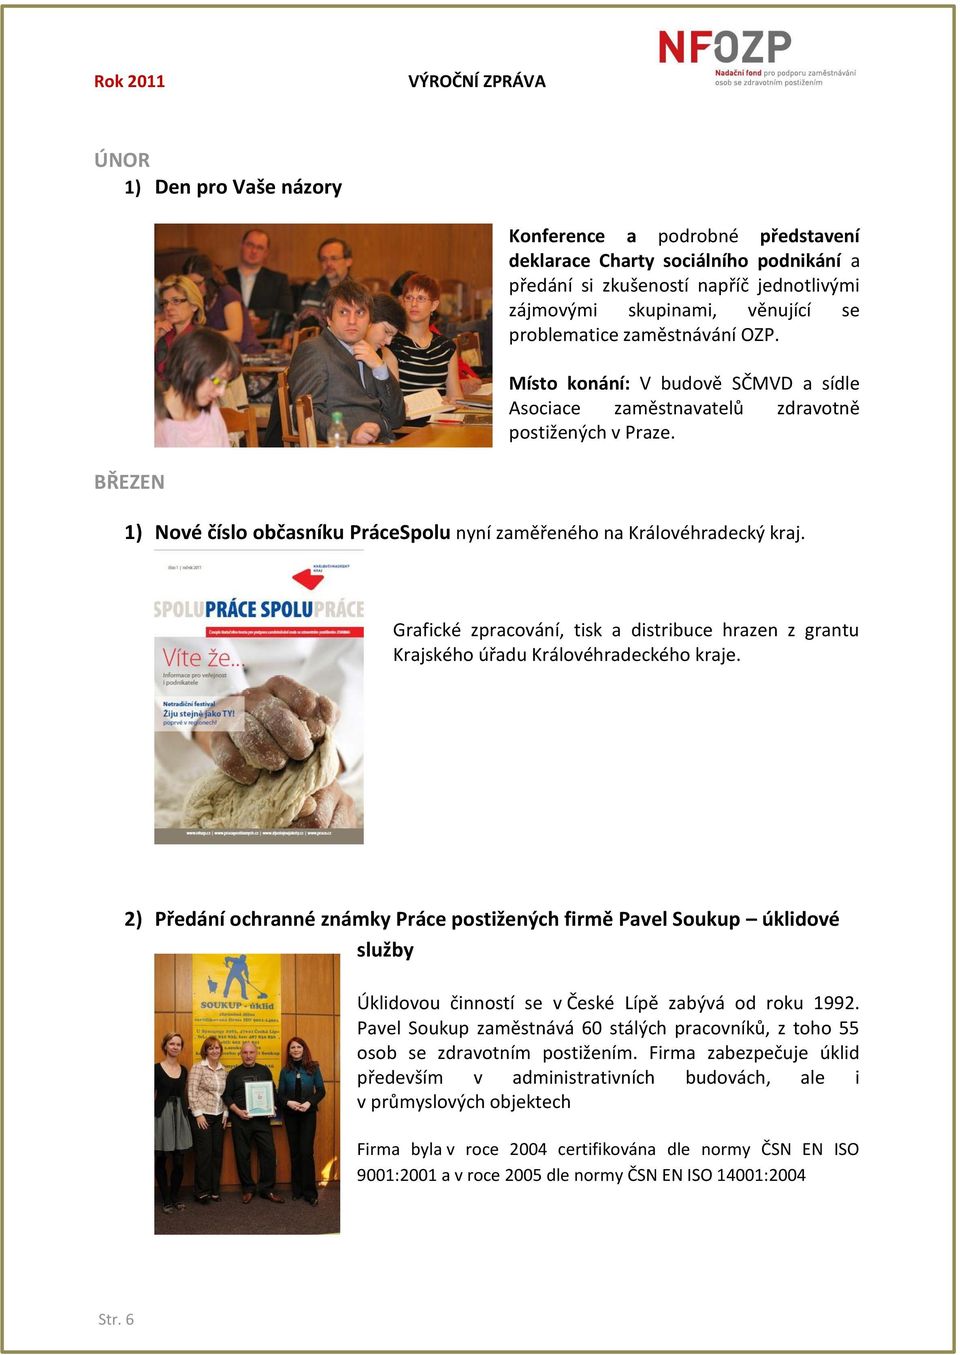 Grafické zpracování, tisk a distribuce hrazen z grantu Krajského úřadu Královéhradeckého kraje.